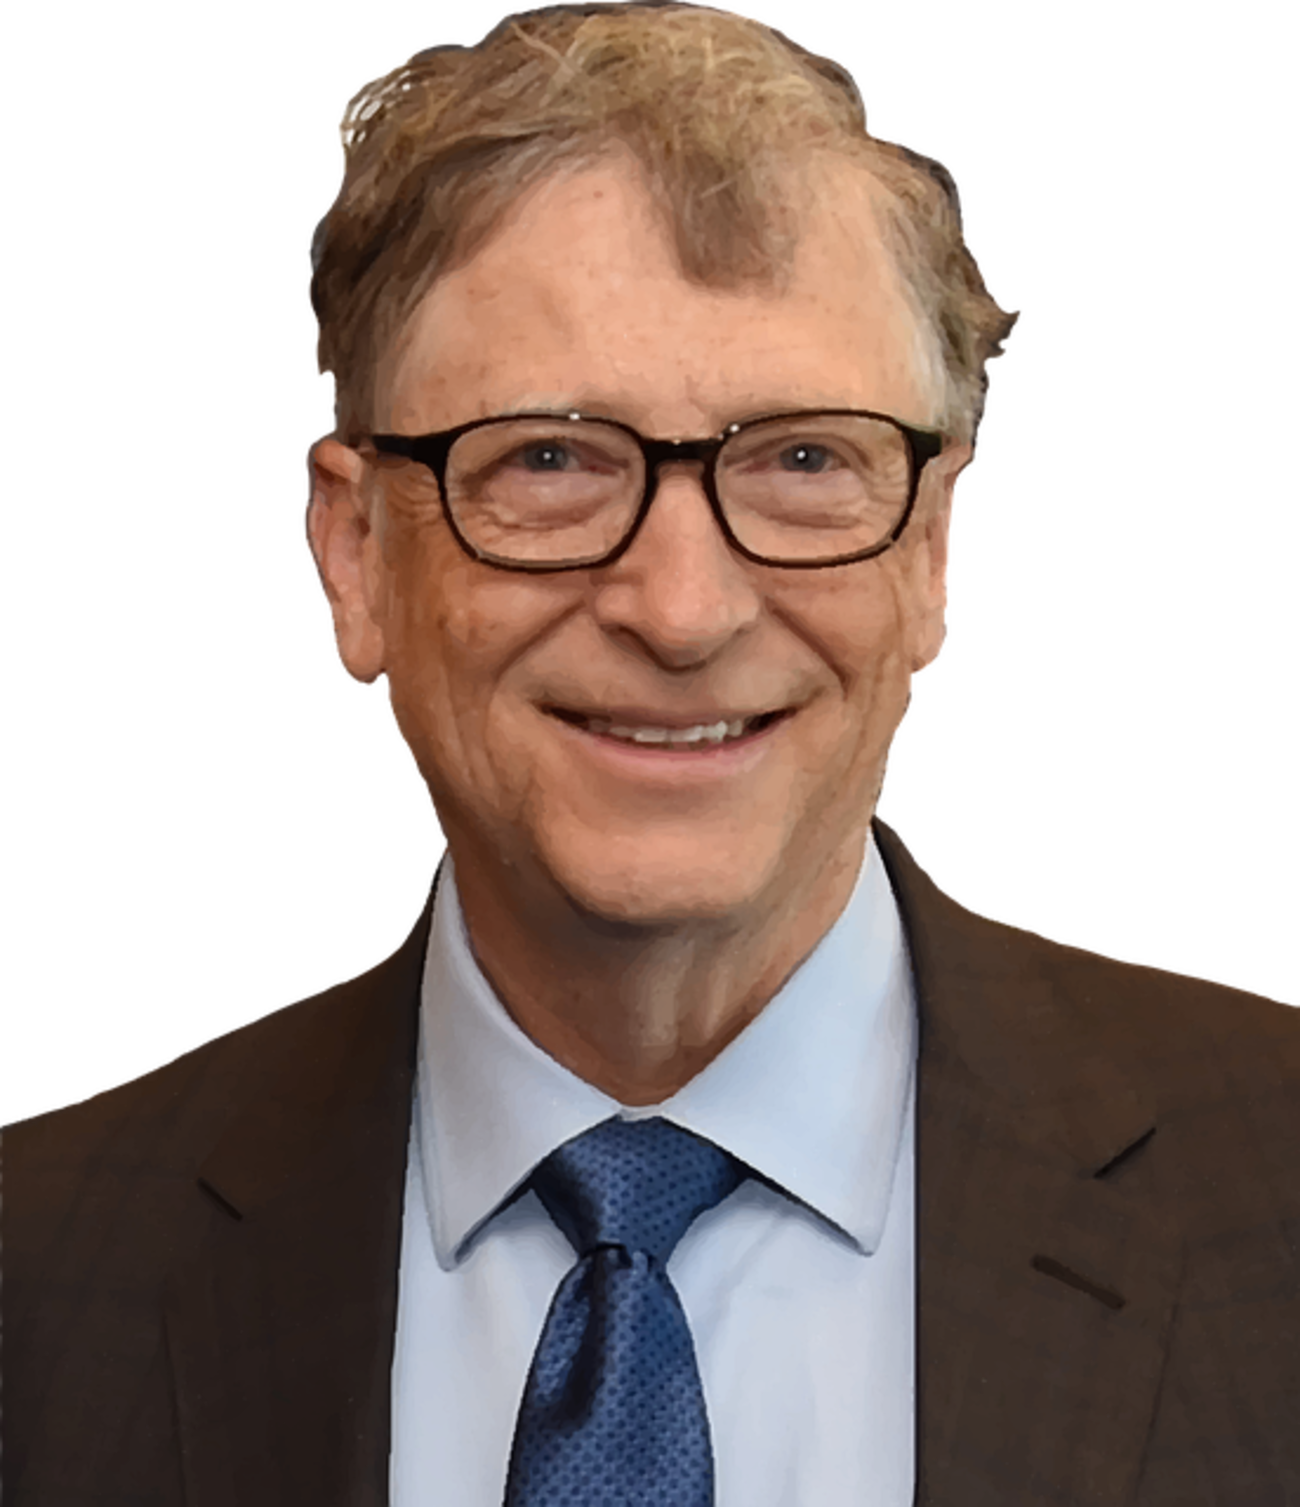 Bill Gates a prezis ”variola maimuței”. Despre ”joaca de-a germenii” a vorbit cu șase luni în urmă